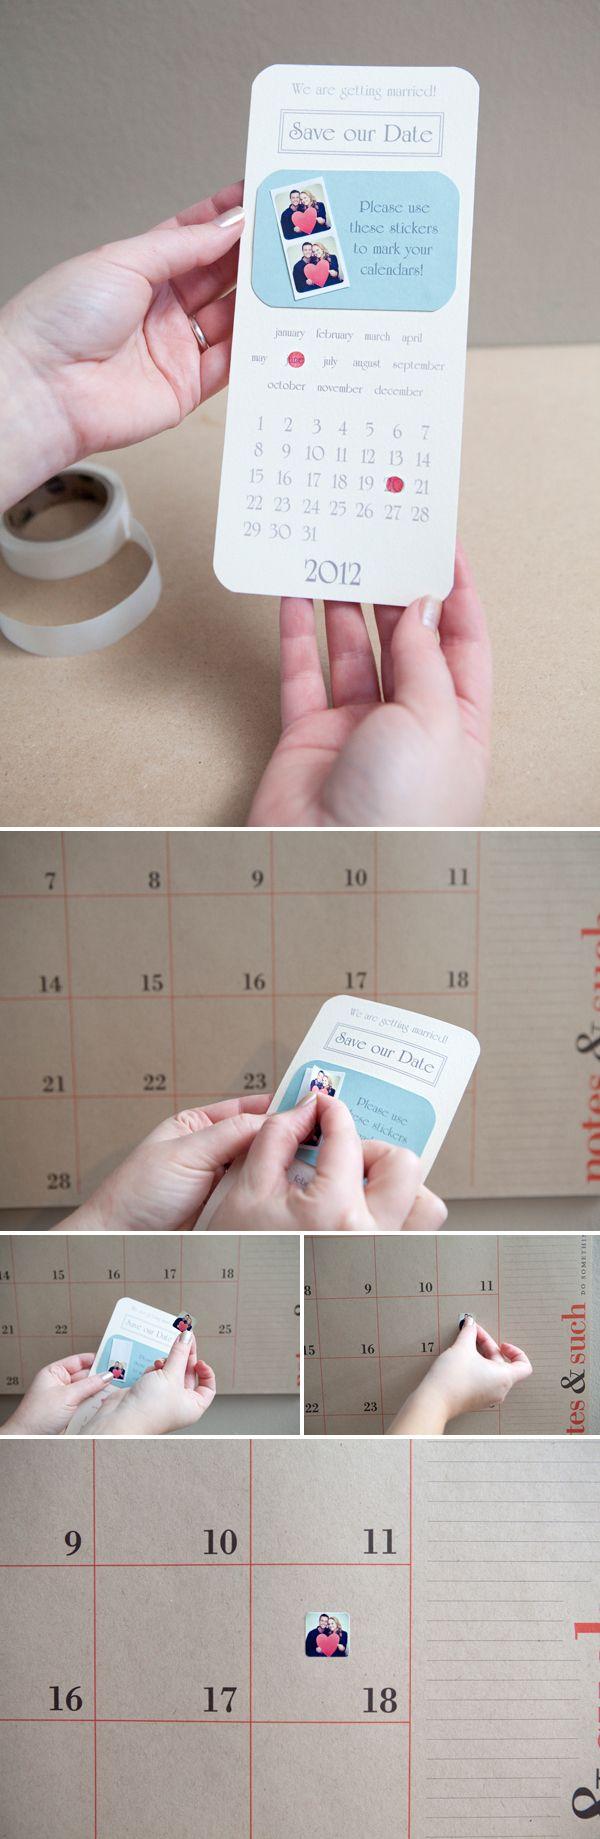 زفاف - How To Make Super Cute DIY Instagram Save The Date Invitations!